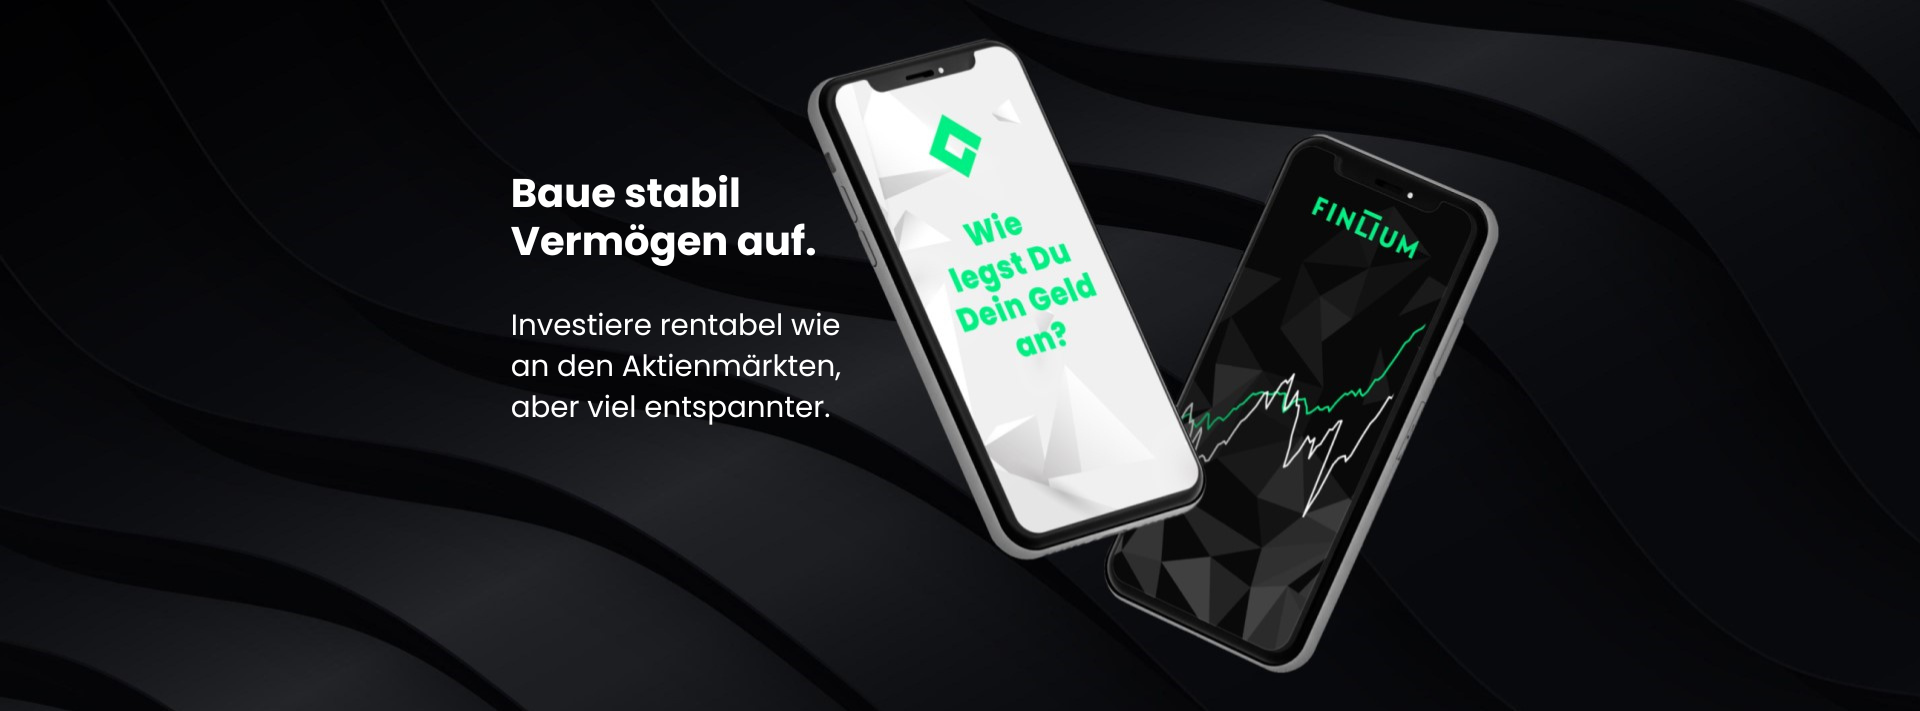 FINLIUM / startup von Berlin / Background